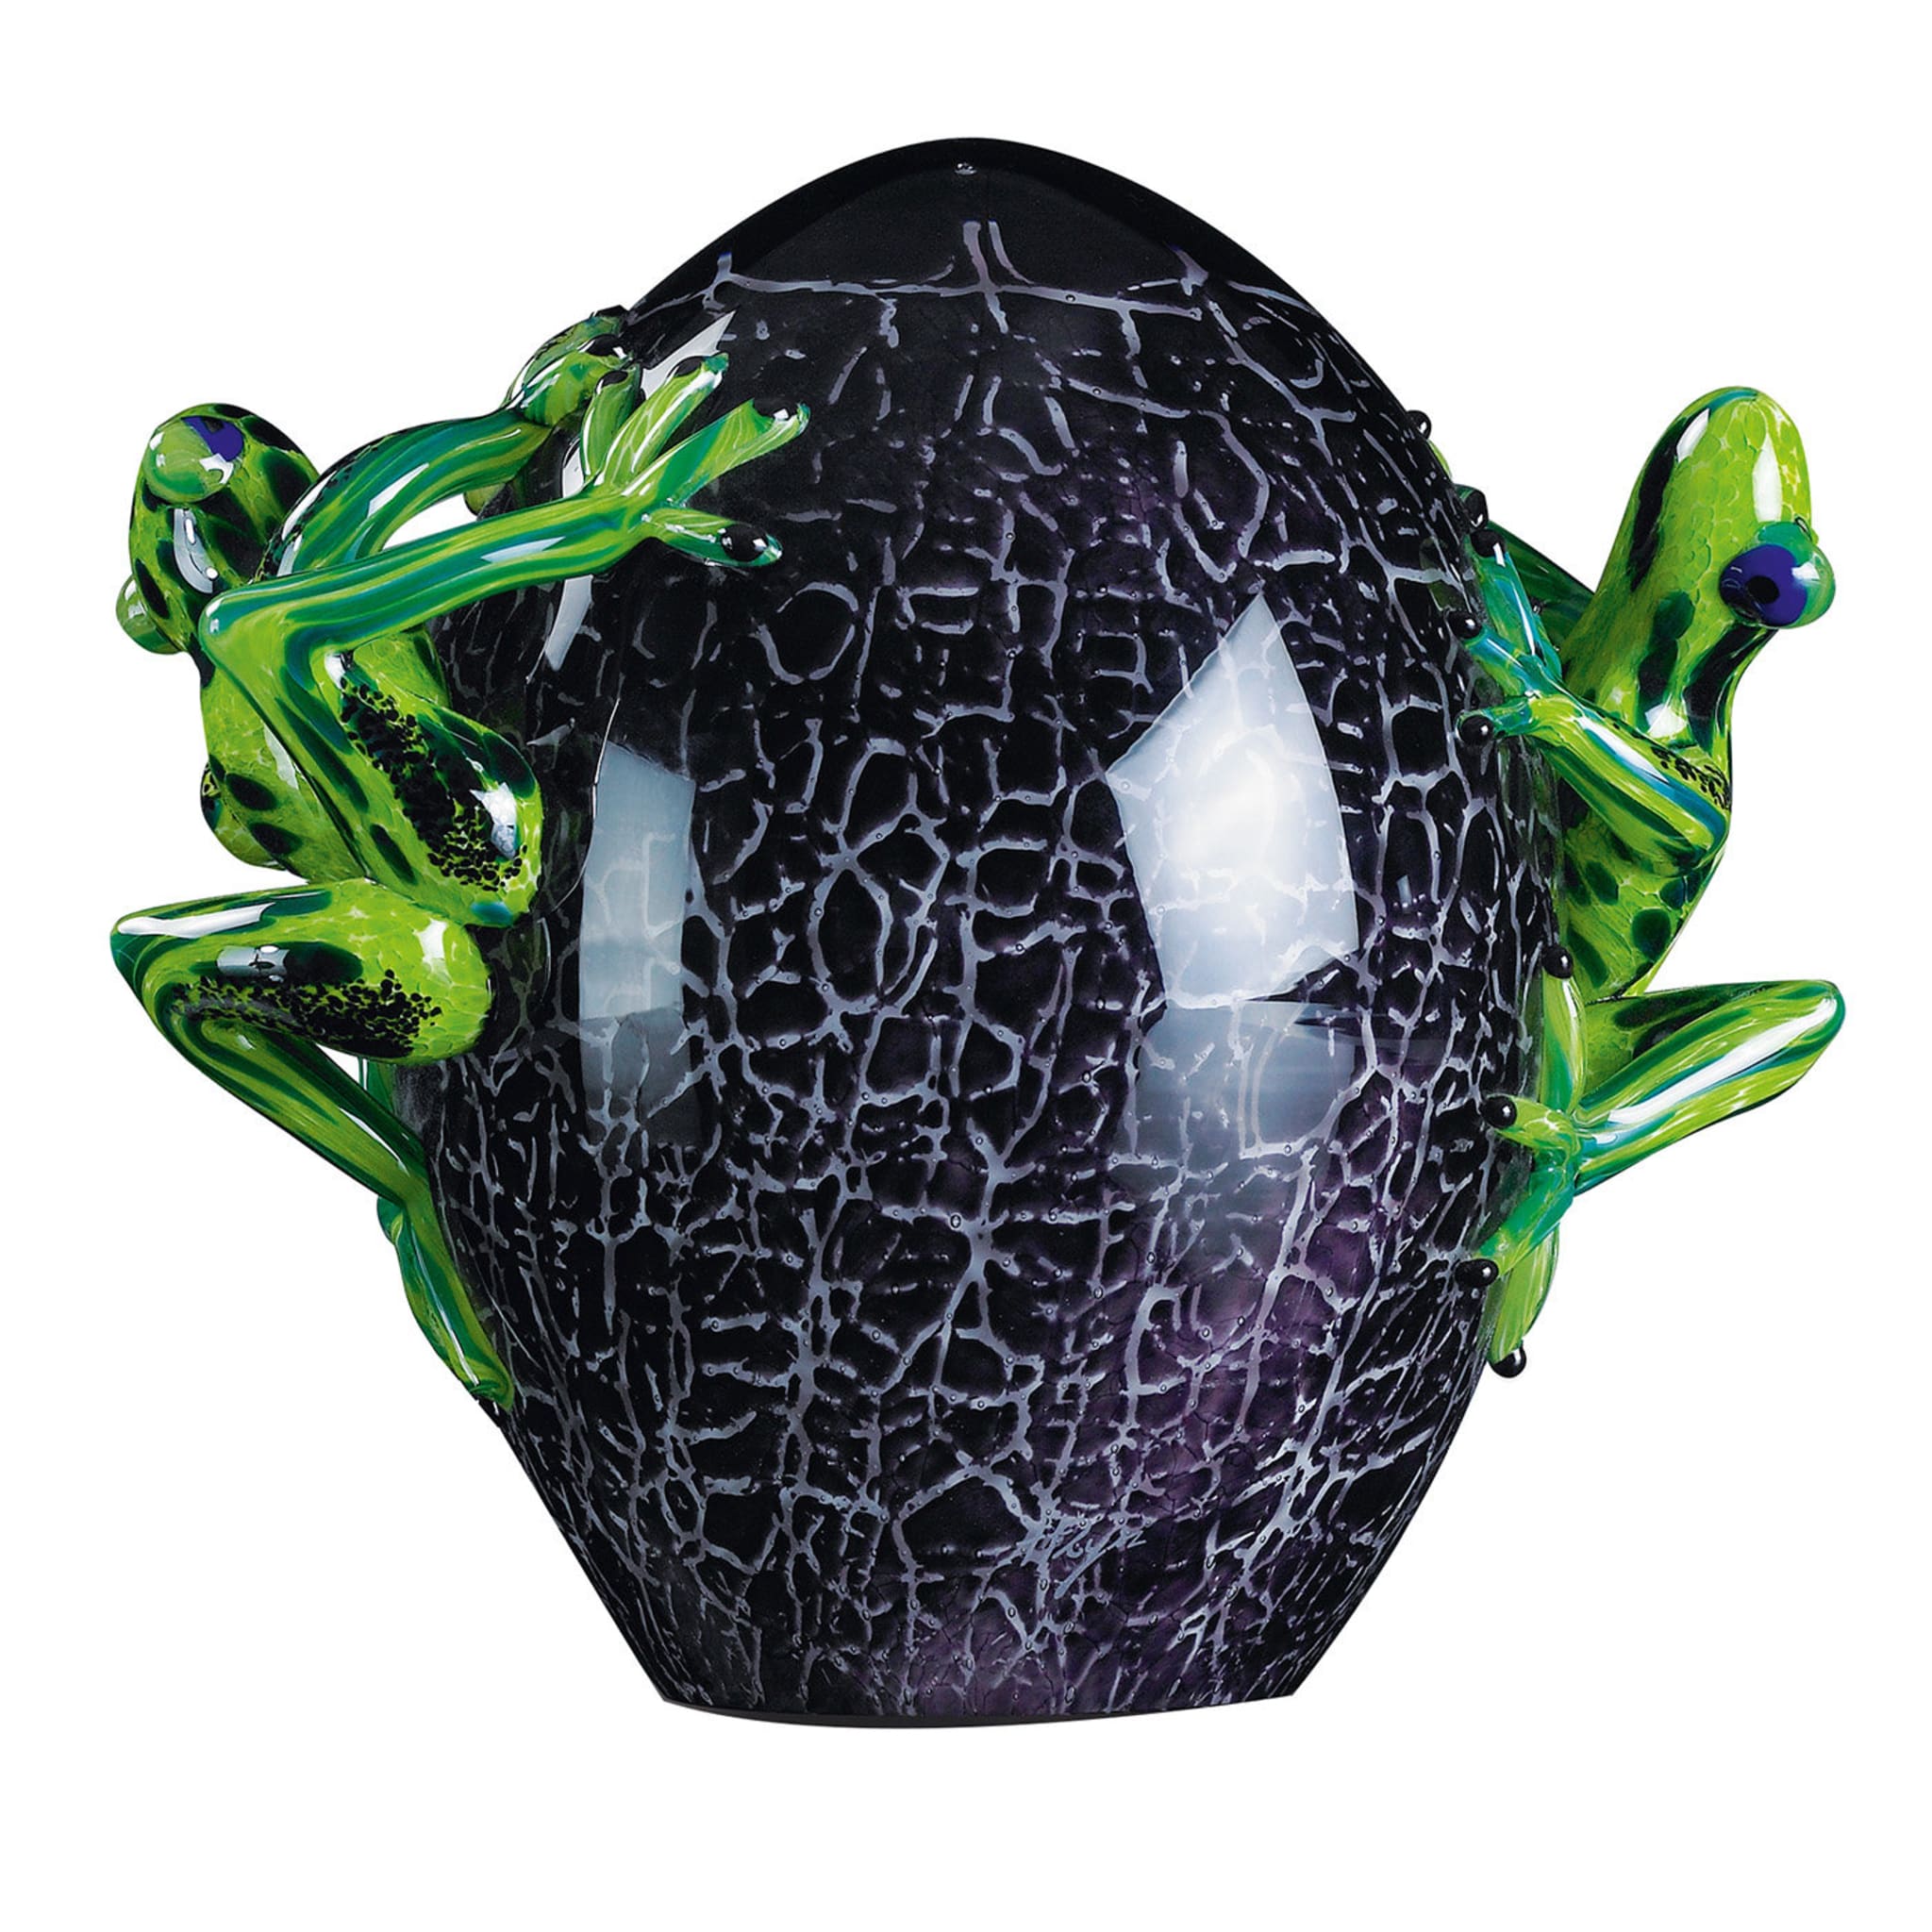 Huevo de cristal craquelado negro con ranas verdes - Vista principal